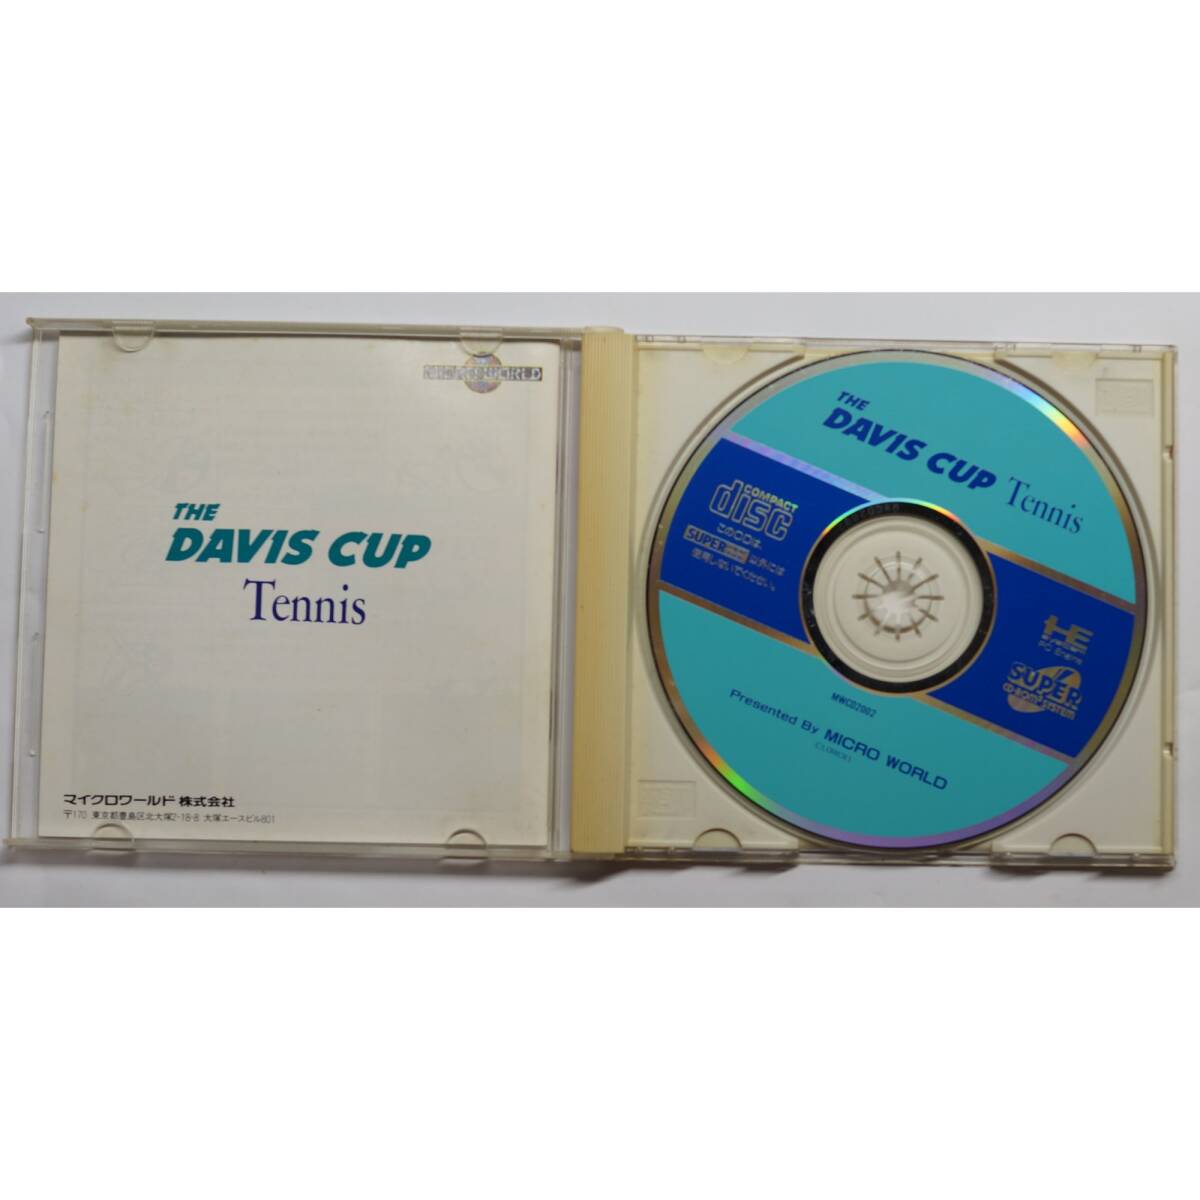 ザ デビスカップテニス THE DAVIS CUP TENNIS PCエンジン ゲーム MWCD2002